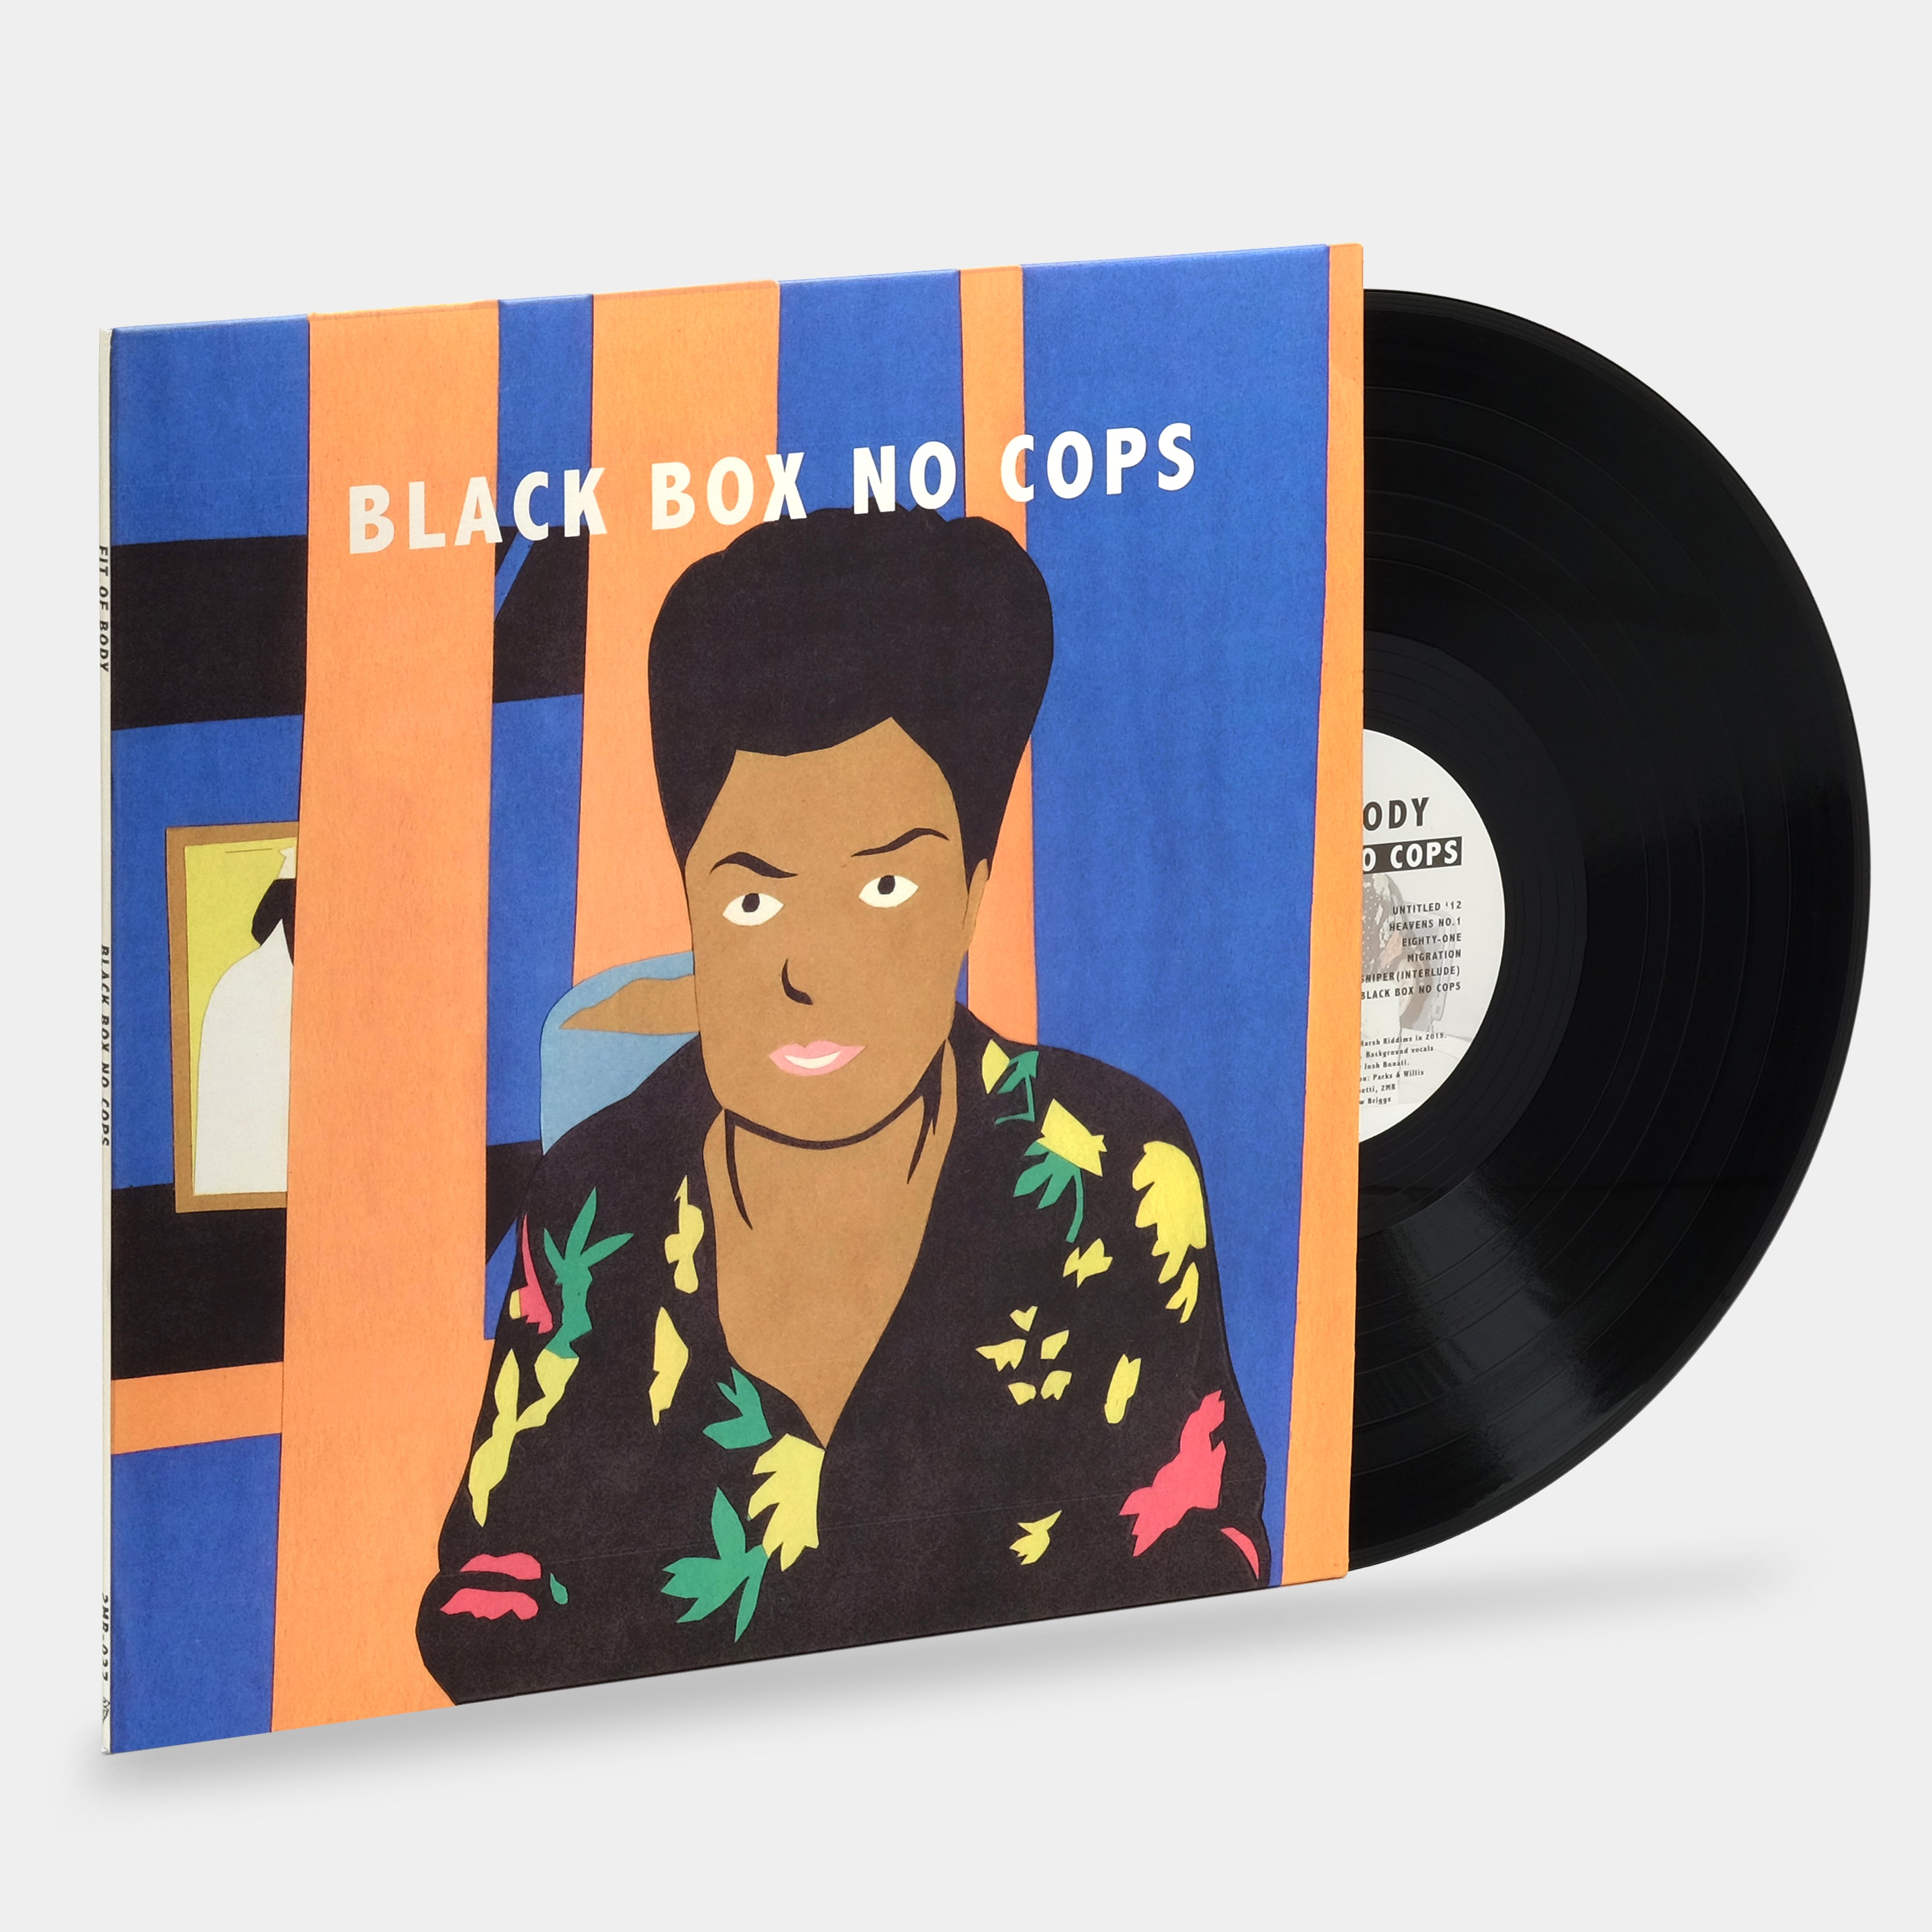 Fit Of Body - Black Box No Cops LP Vinyl Record